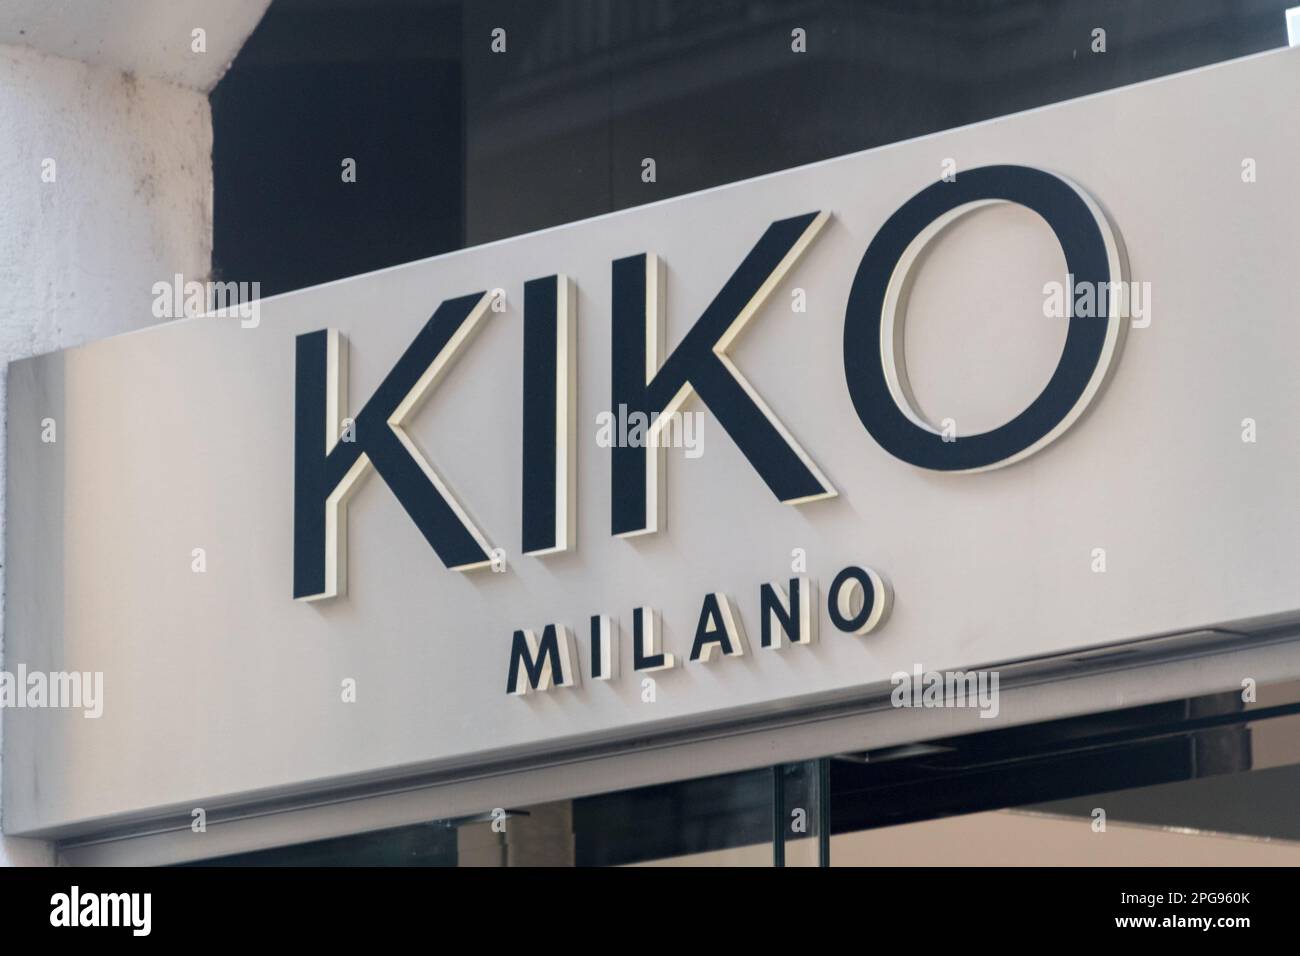 Rome, Italy - December 8, 2022: Logo and sign of KIKO Milano, Italian professional cosmetics brand. Stock Photo